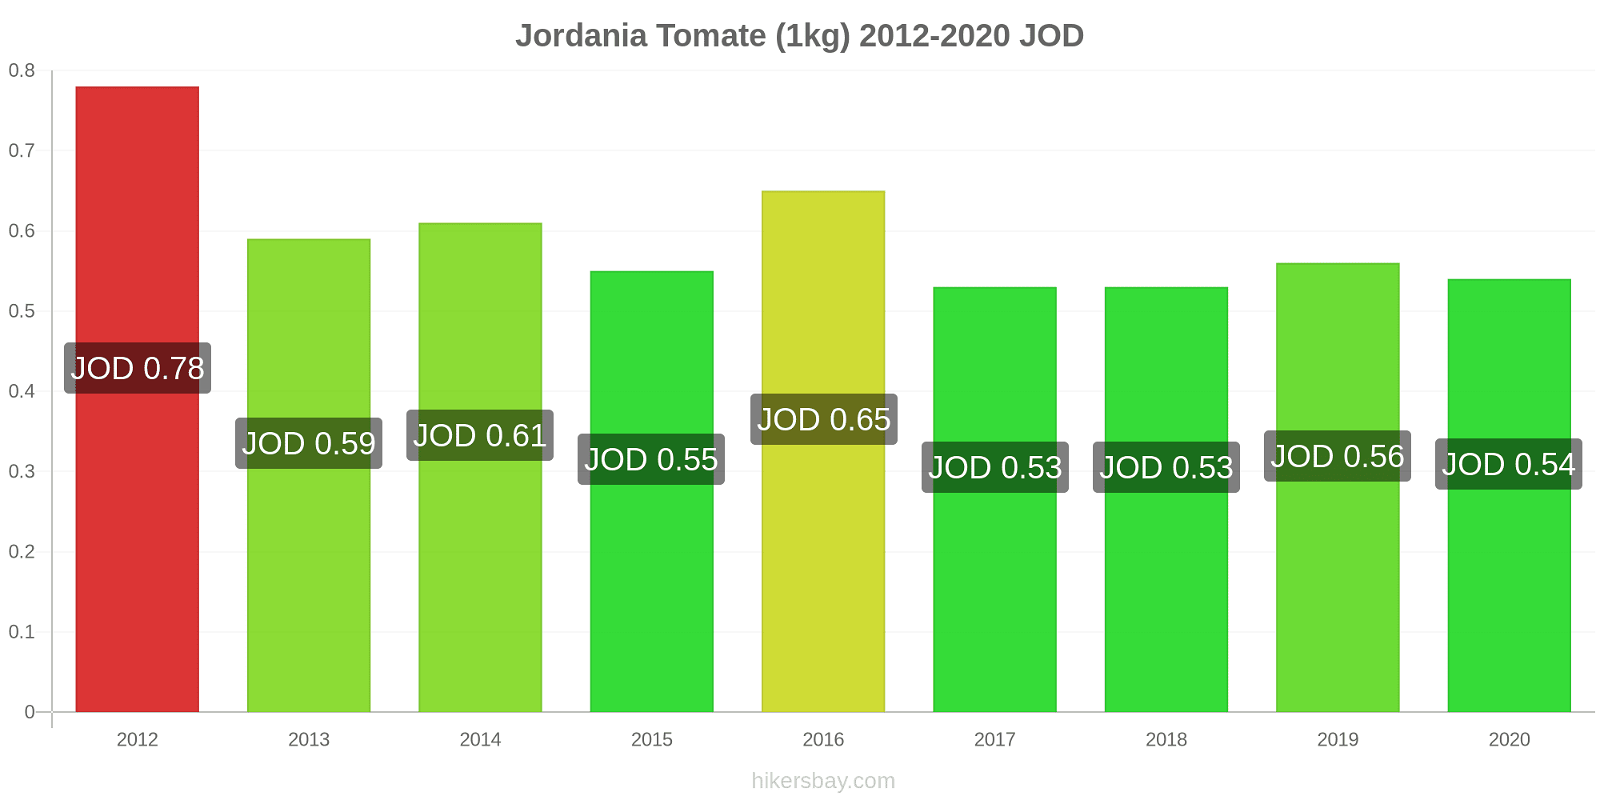 Jordania cambios de precios Tomate (1kg) hikersbay.com